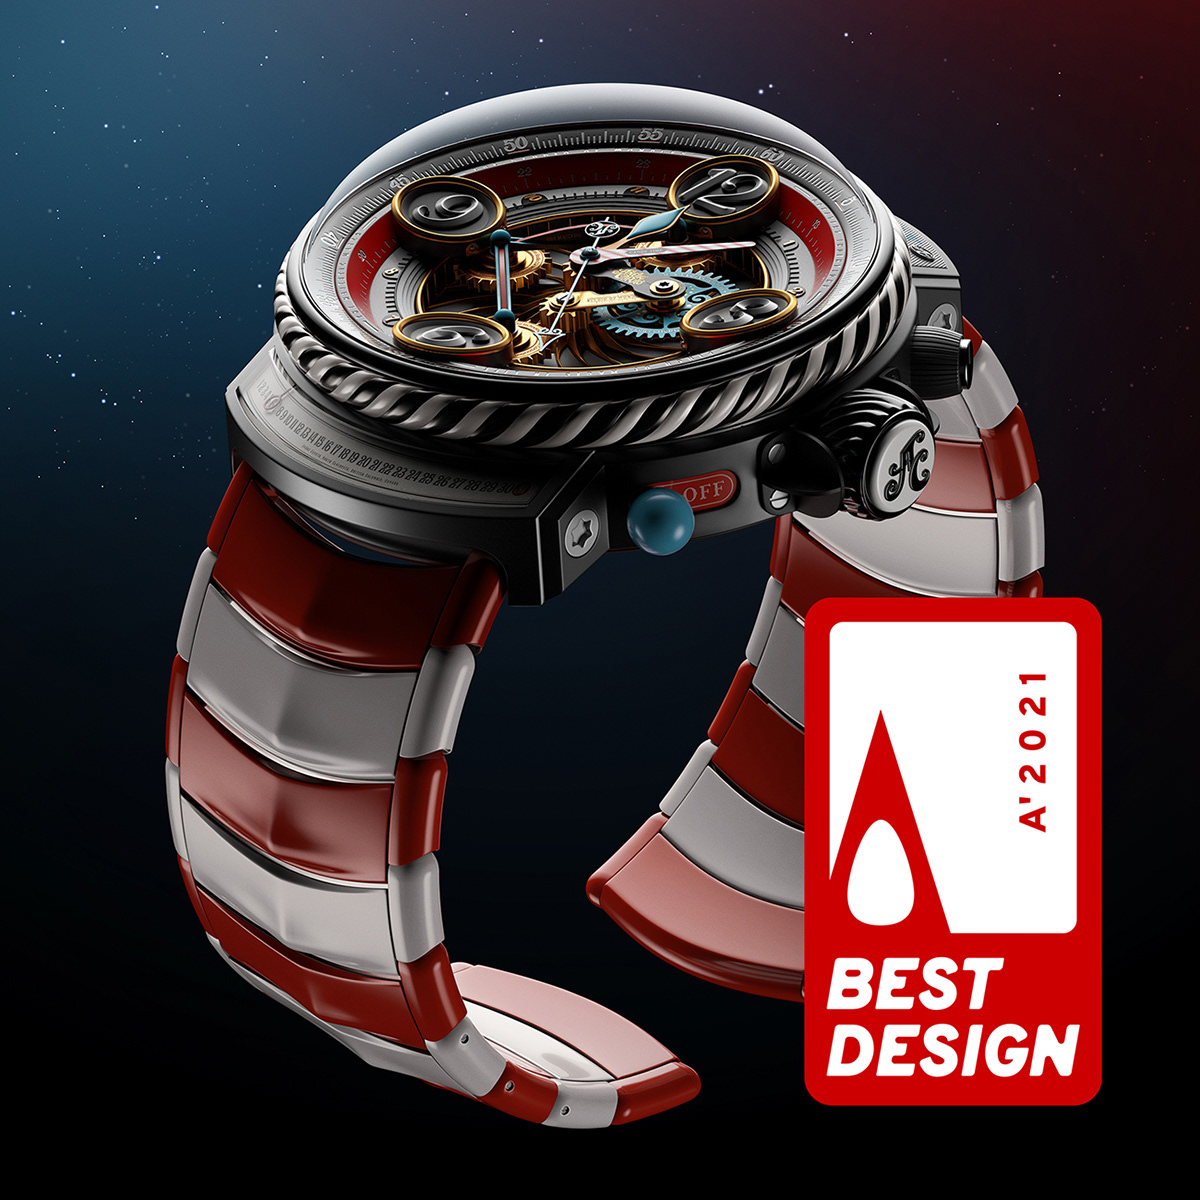 3D adesign andre award caputo CGI design Majestic Platinum watch